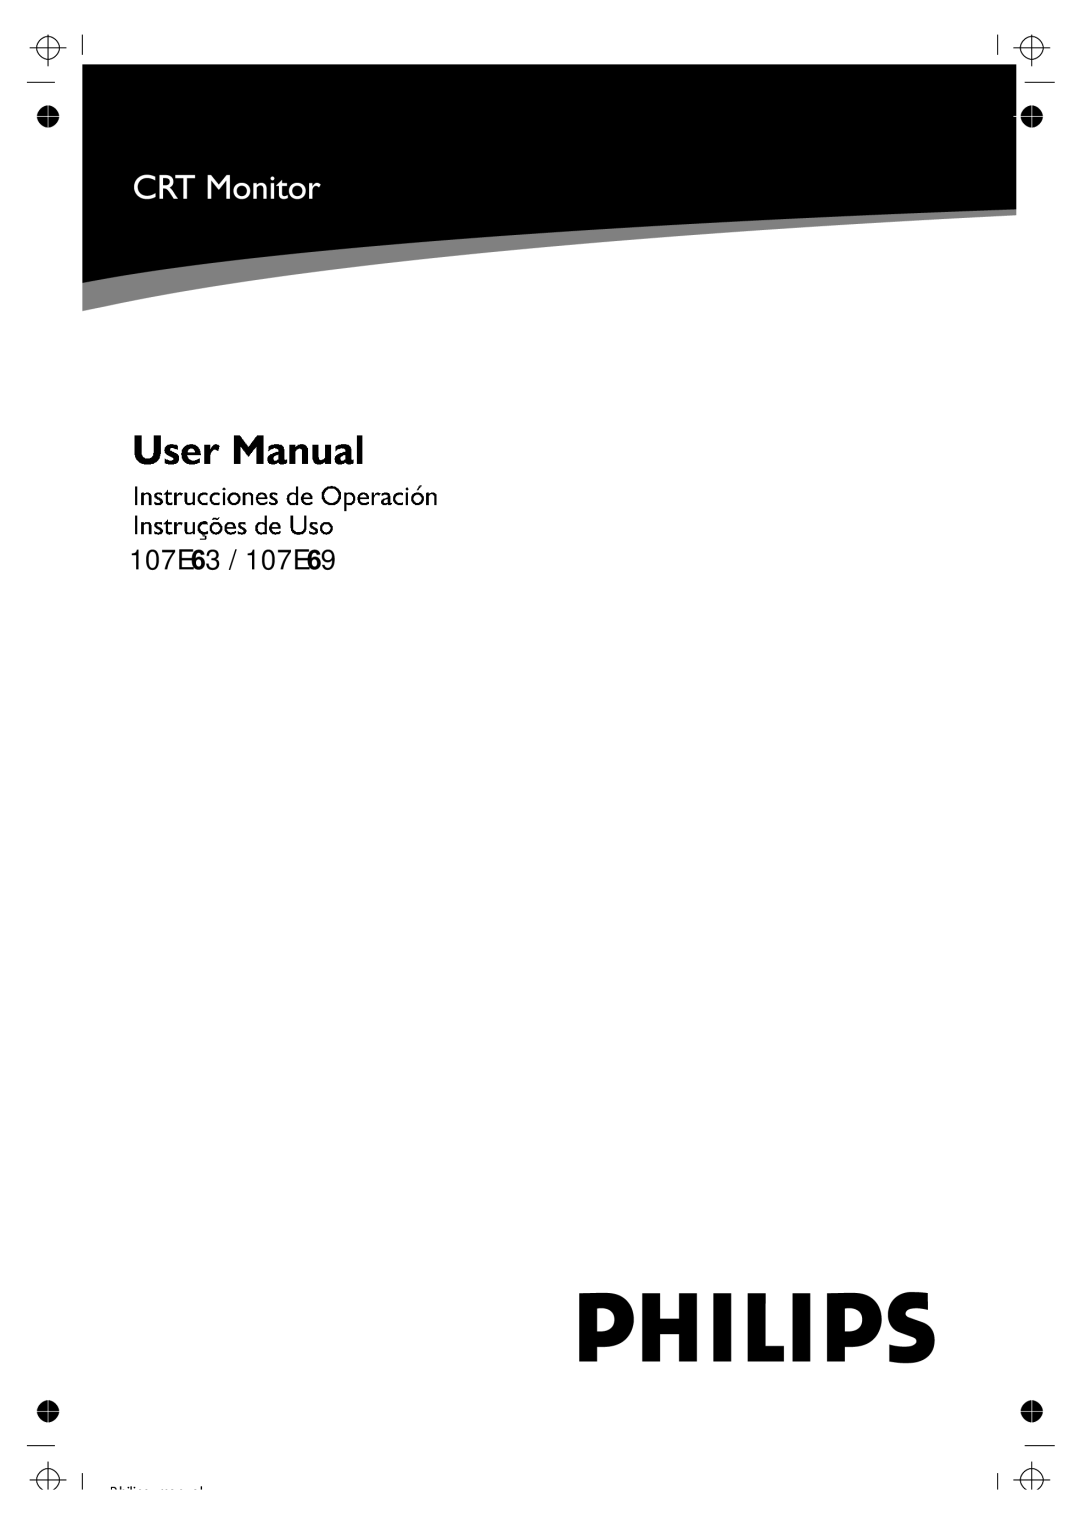 Philips manual 107E63 / 107E69, P hilips manual 